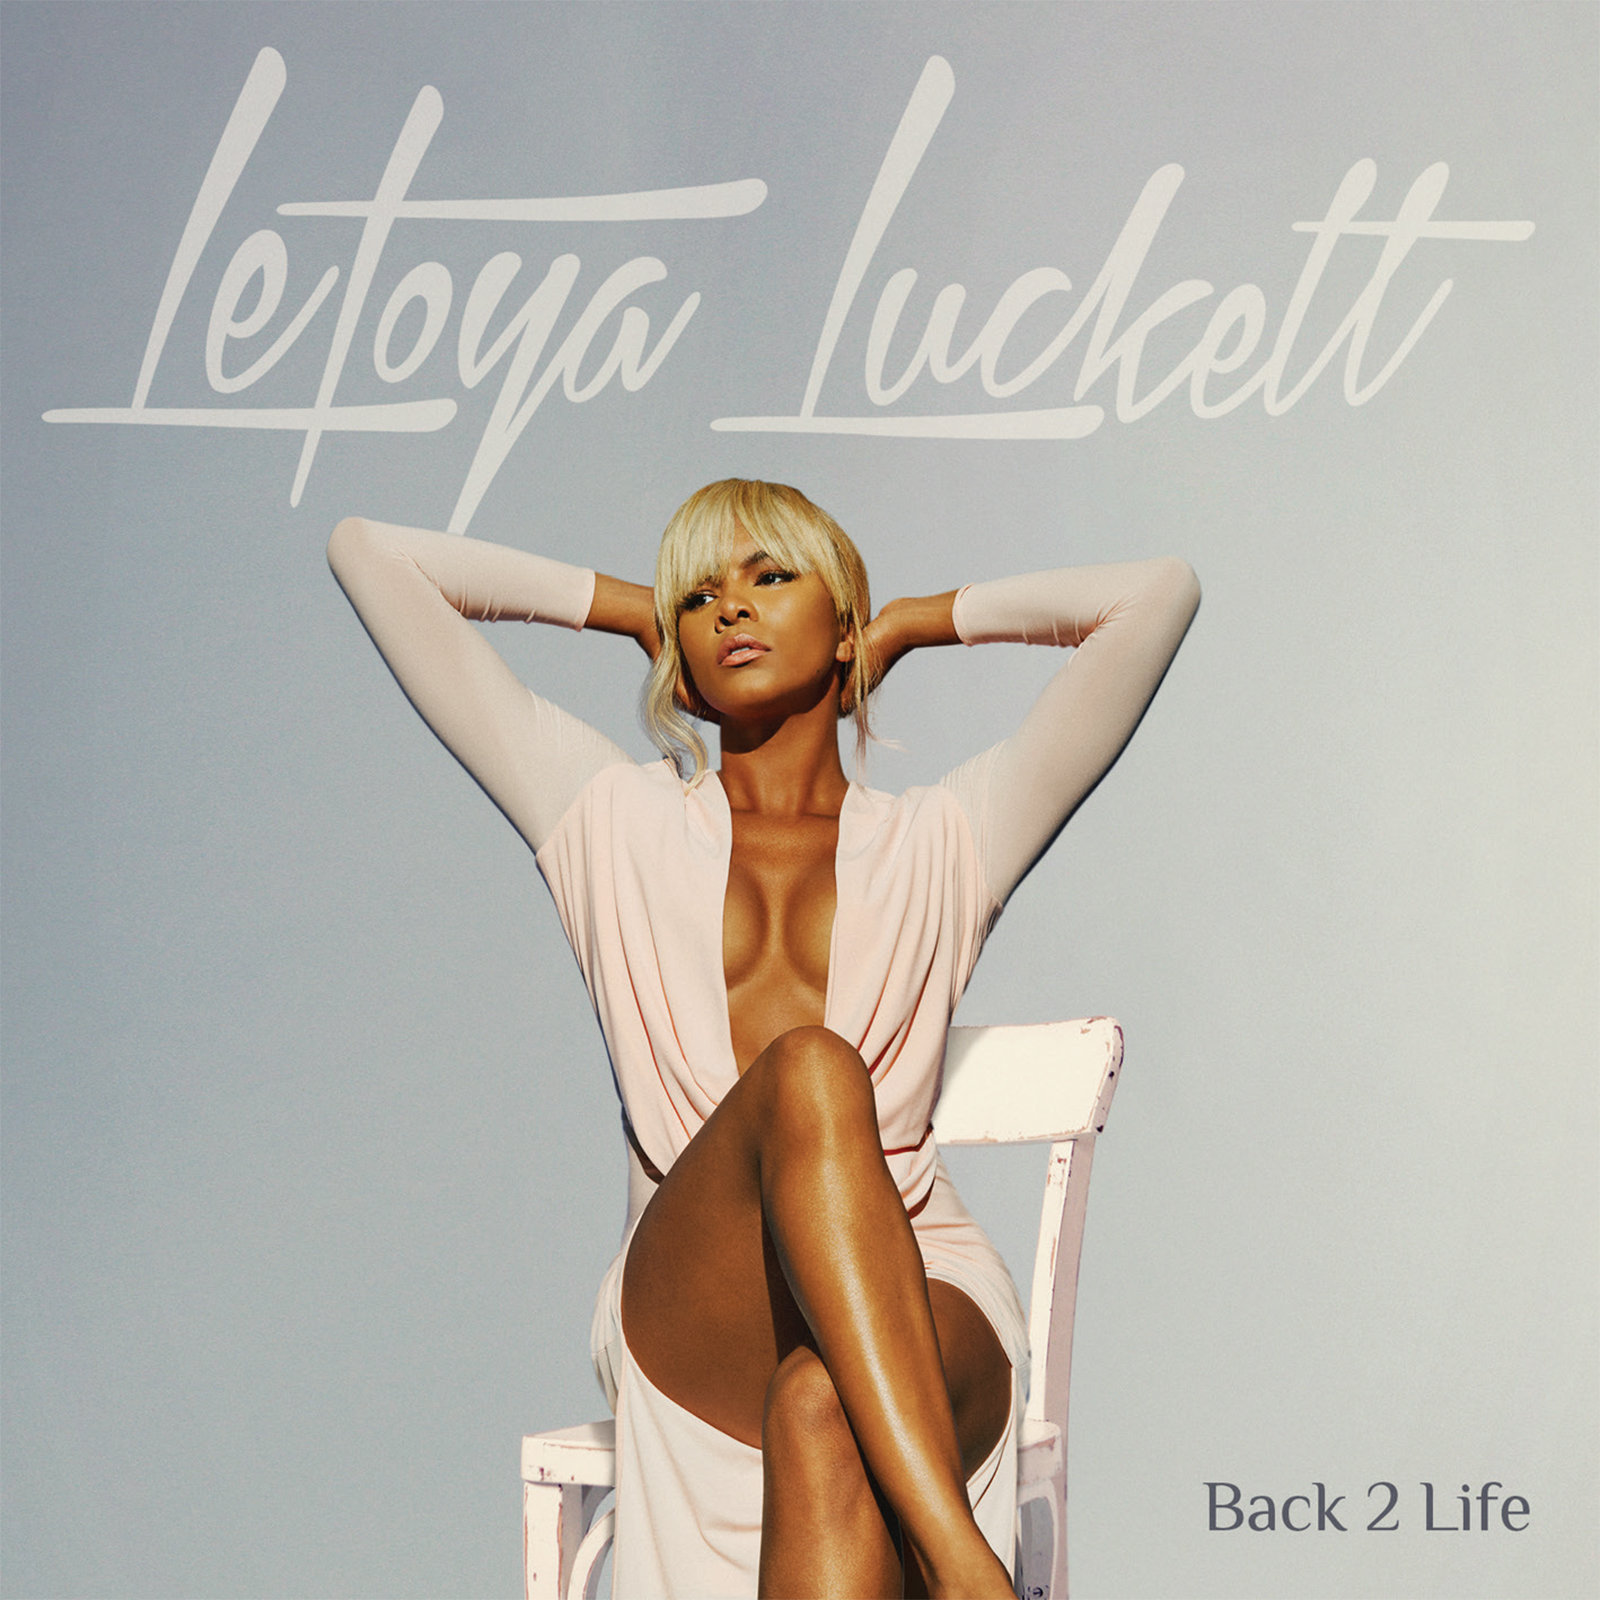 LeToya Luckett Reveals Cover Art, Release Date & Tracklist for Upcoming Album "Back 2 Life"